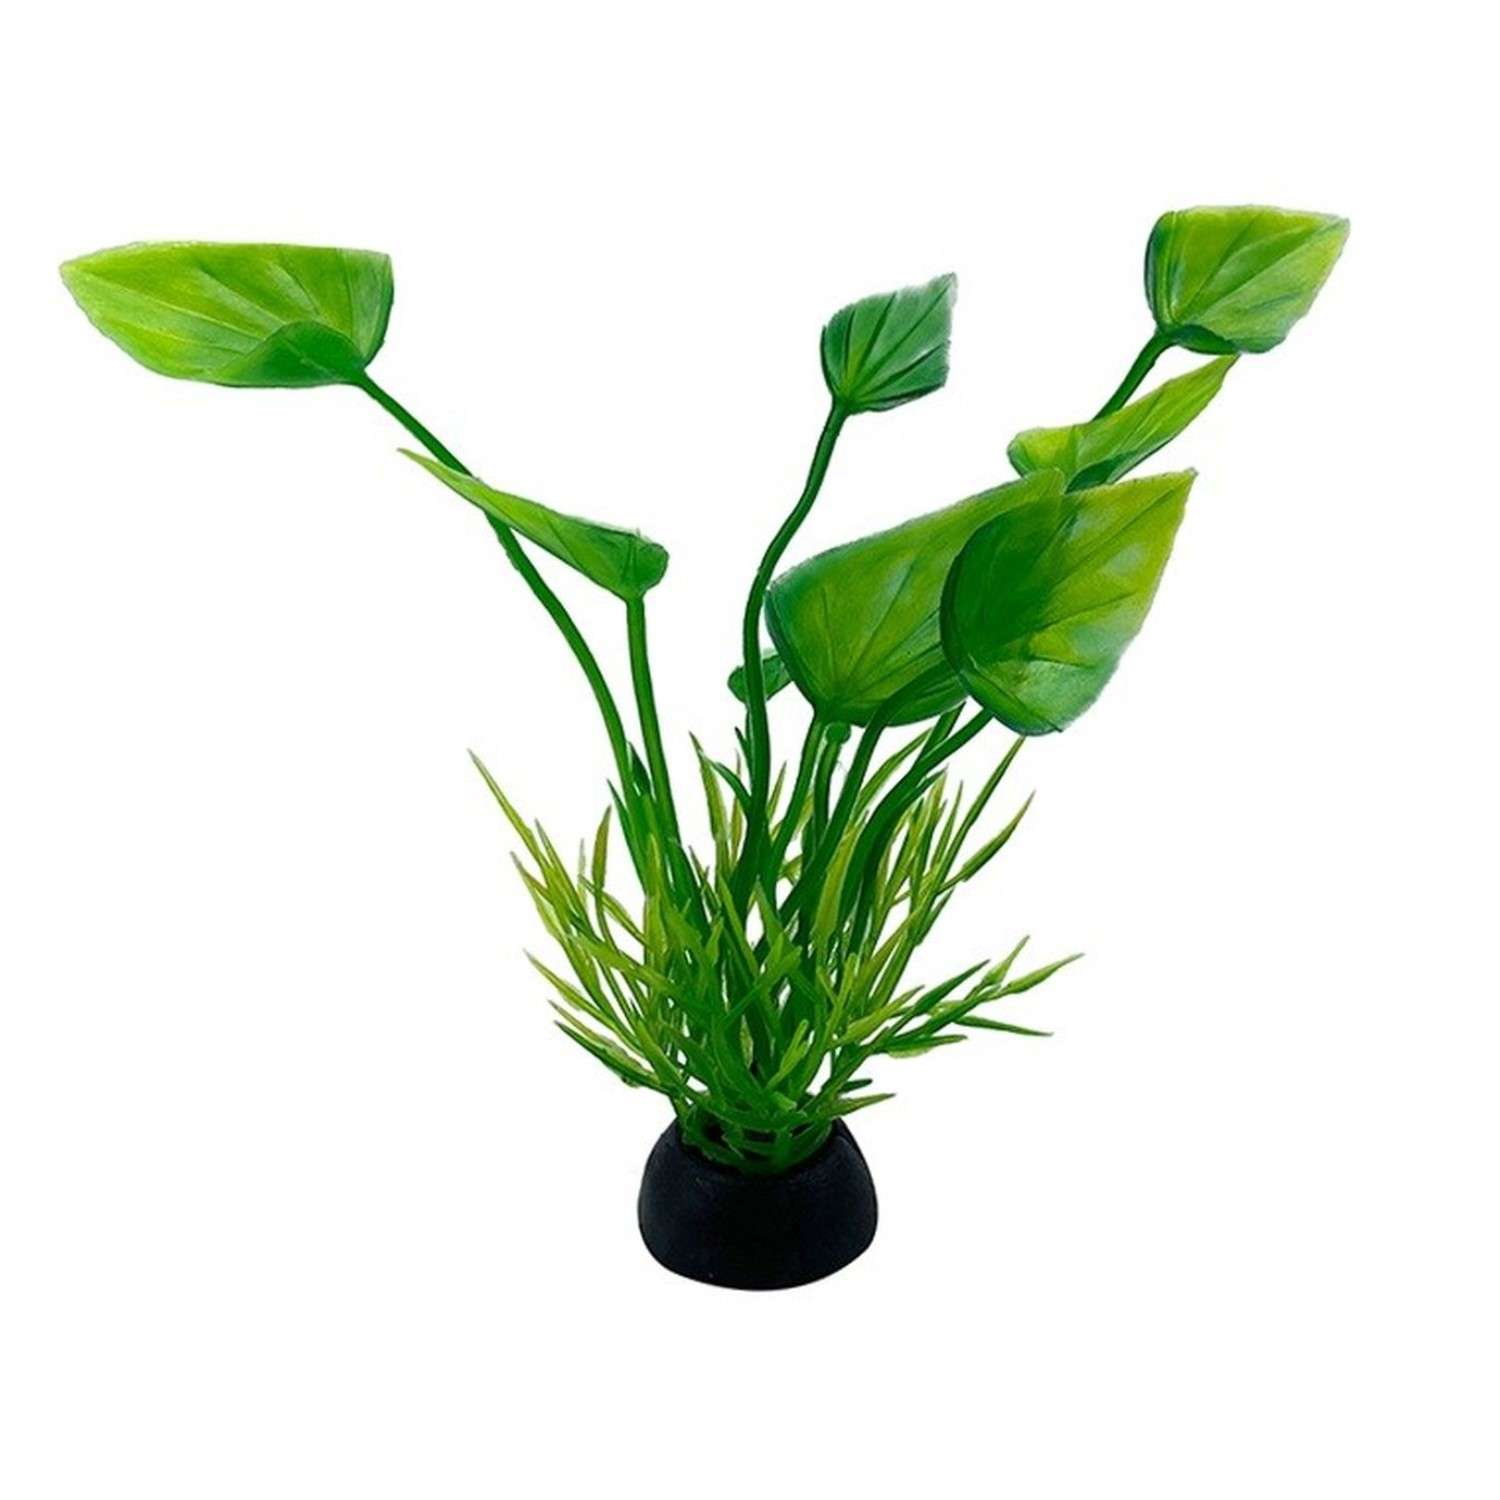 Аквариумное растение Rabizy искусственное 2.5х10 см - фото 2